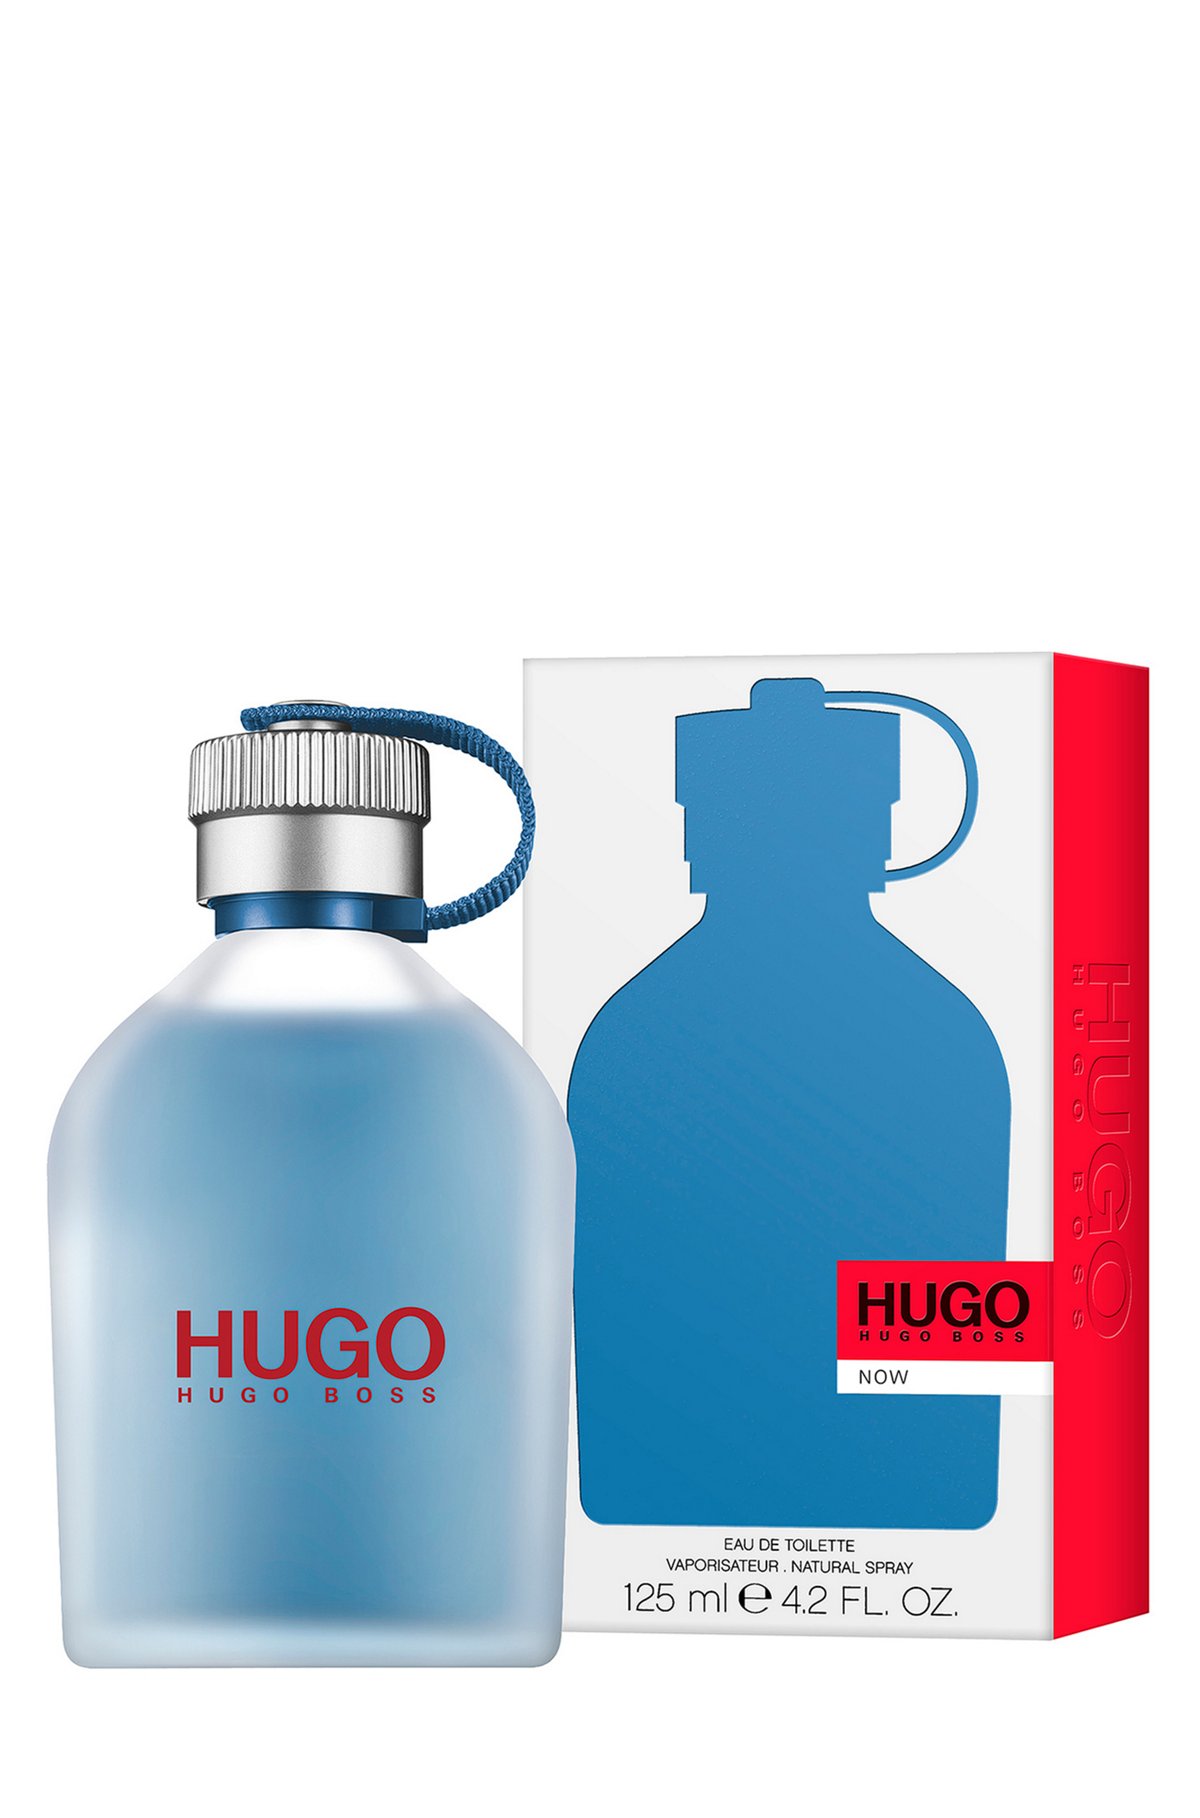 Hugo Boss Now Cologne Shop | website.jkuat.ac.ke